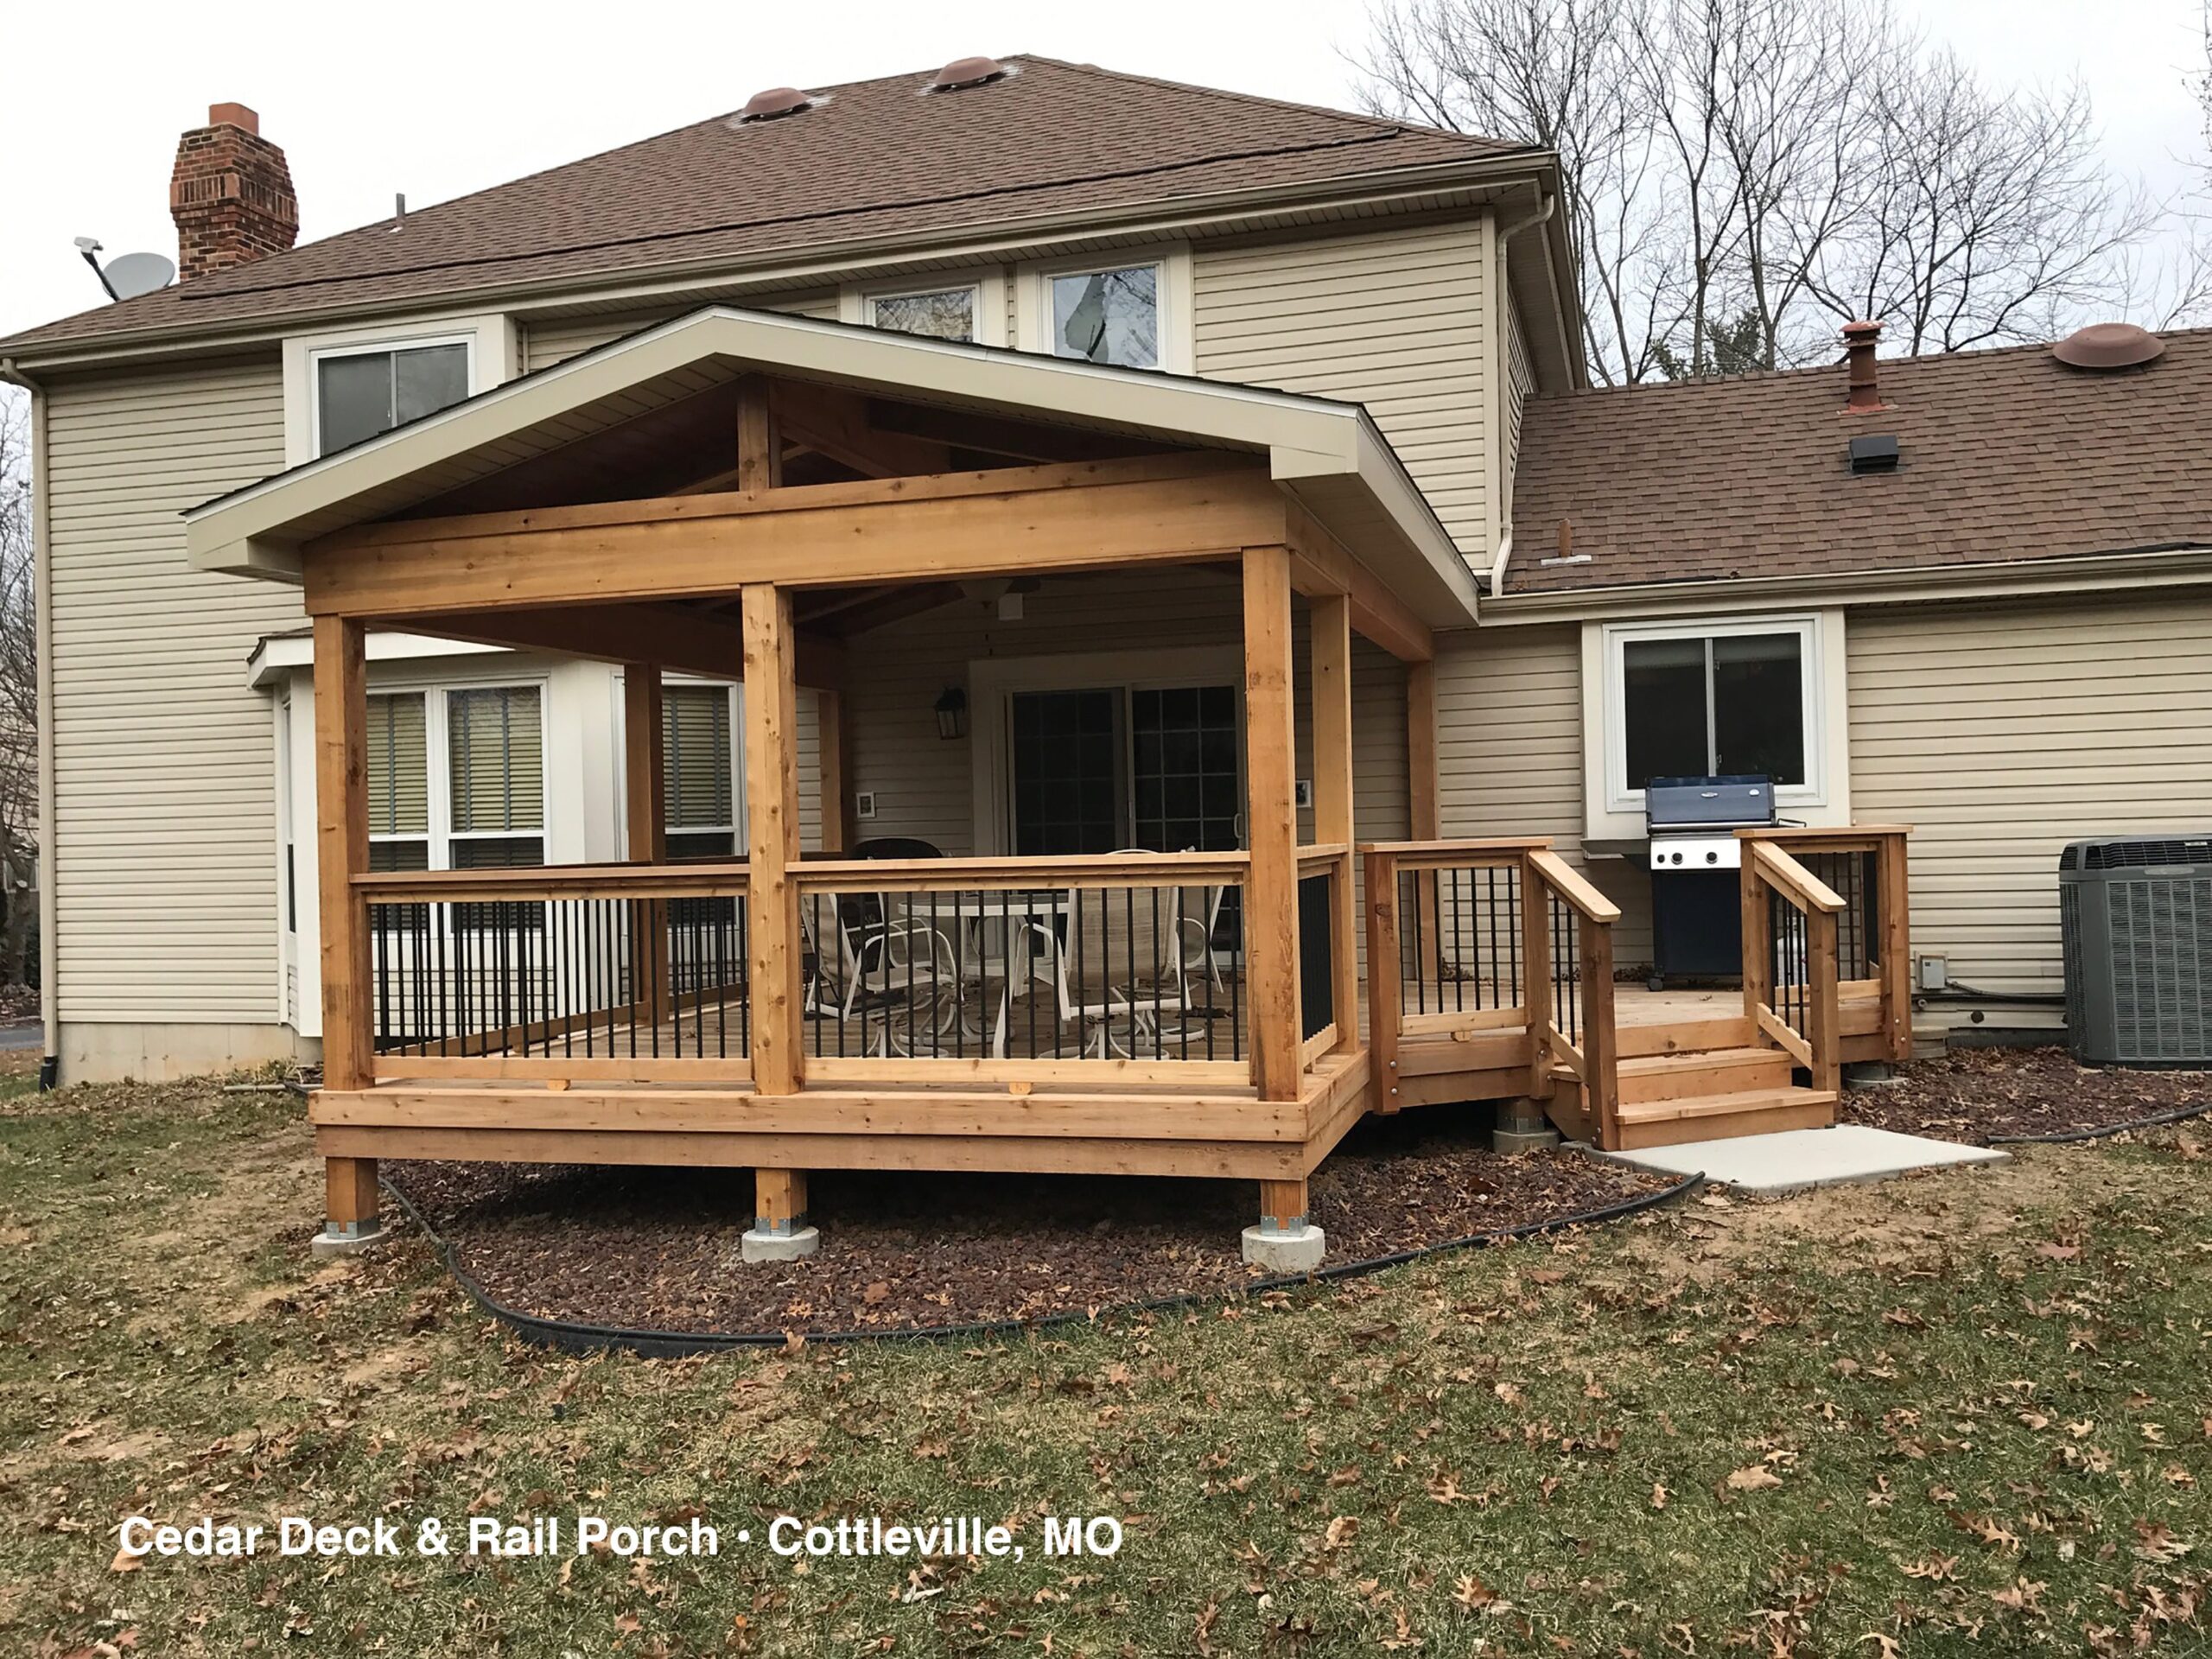 Cedar Deck & Rail Porch